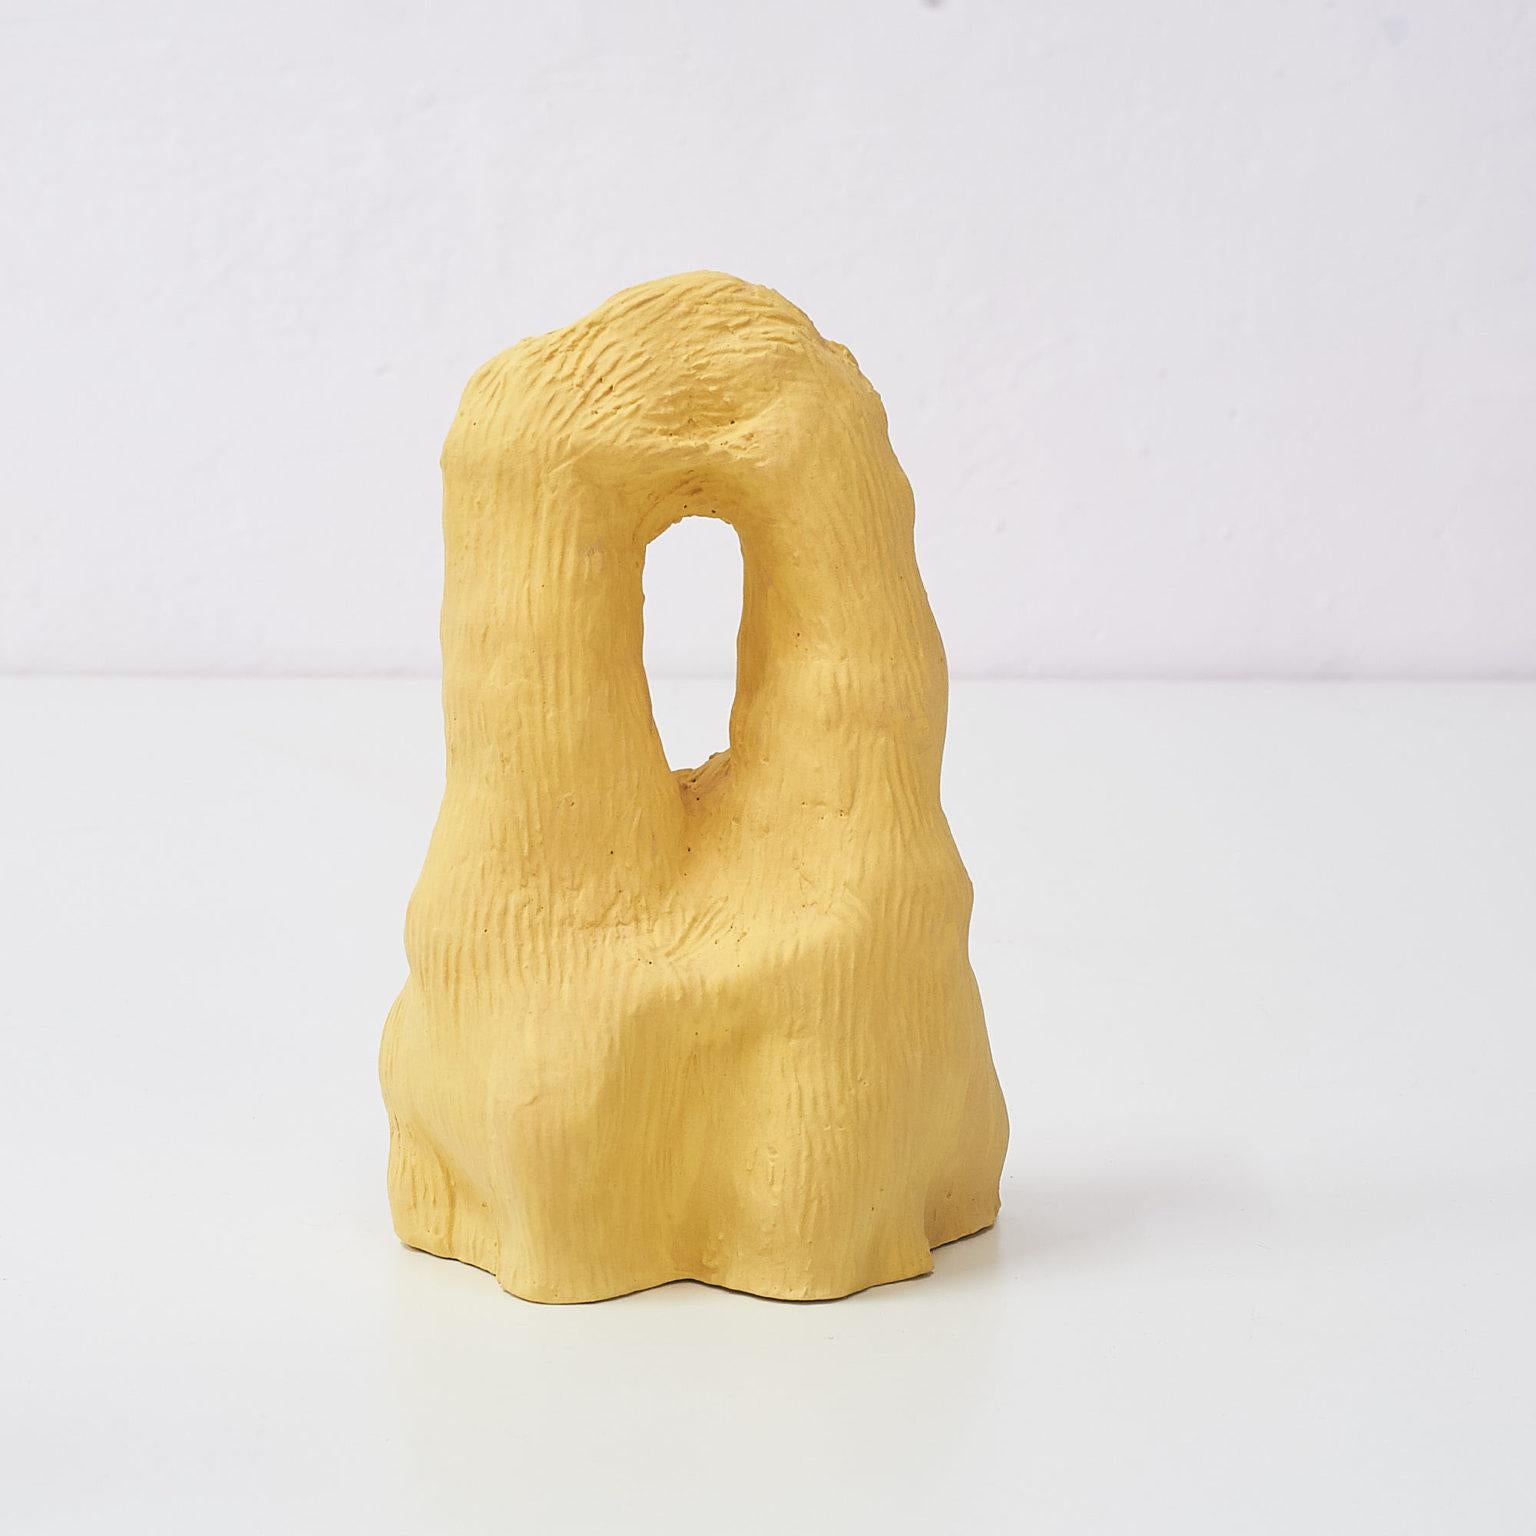 Doggo #2 Skulptur von Siup Studio
Abmessungen: T8 x B12 x H20 cm
MATERIALIEN: Keramik

Siup ist ein kleines Studio mit Sitz in Warschau. Das Konzept wurde von drei Freunden - Martyna Dymek, Marcin Sieczka und Kasia Skoczylas - entwickelt, die